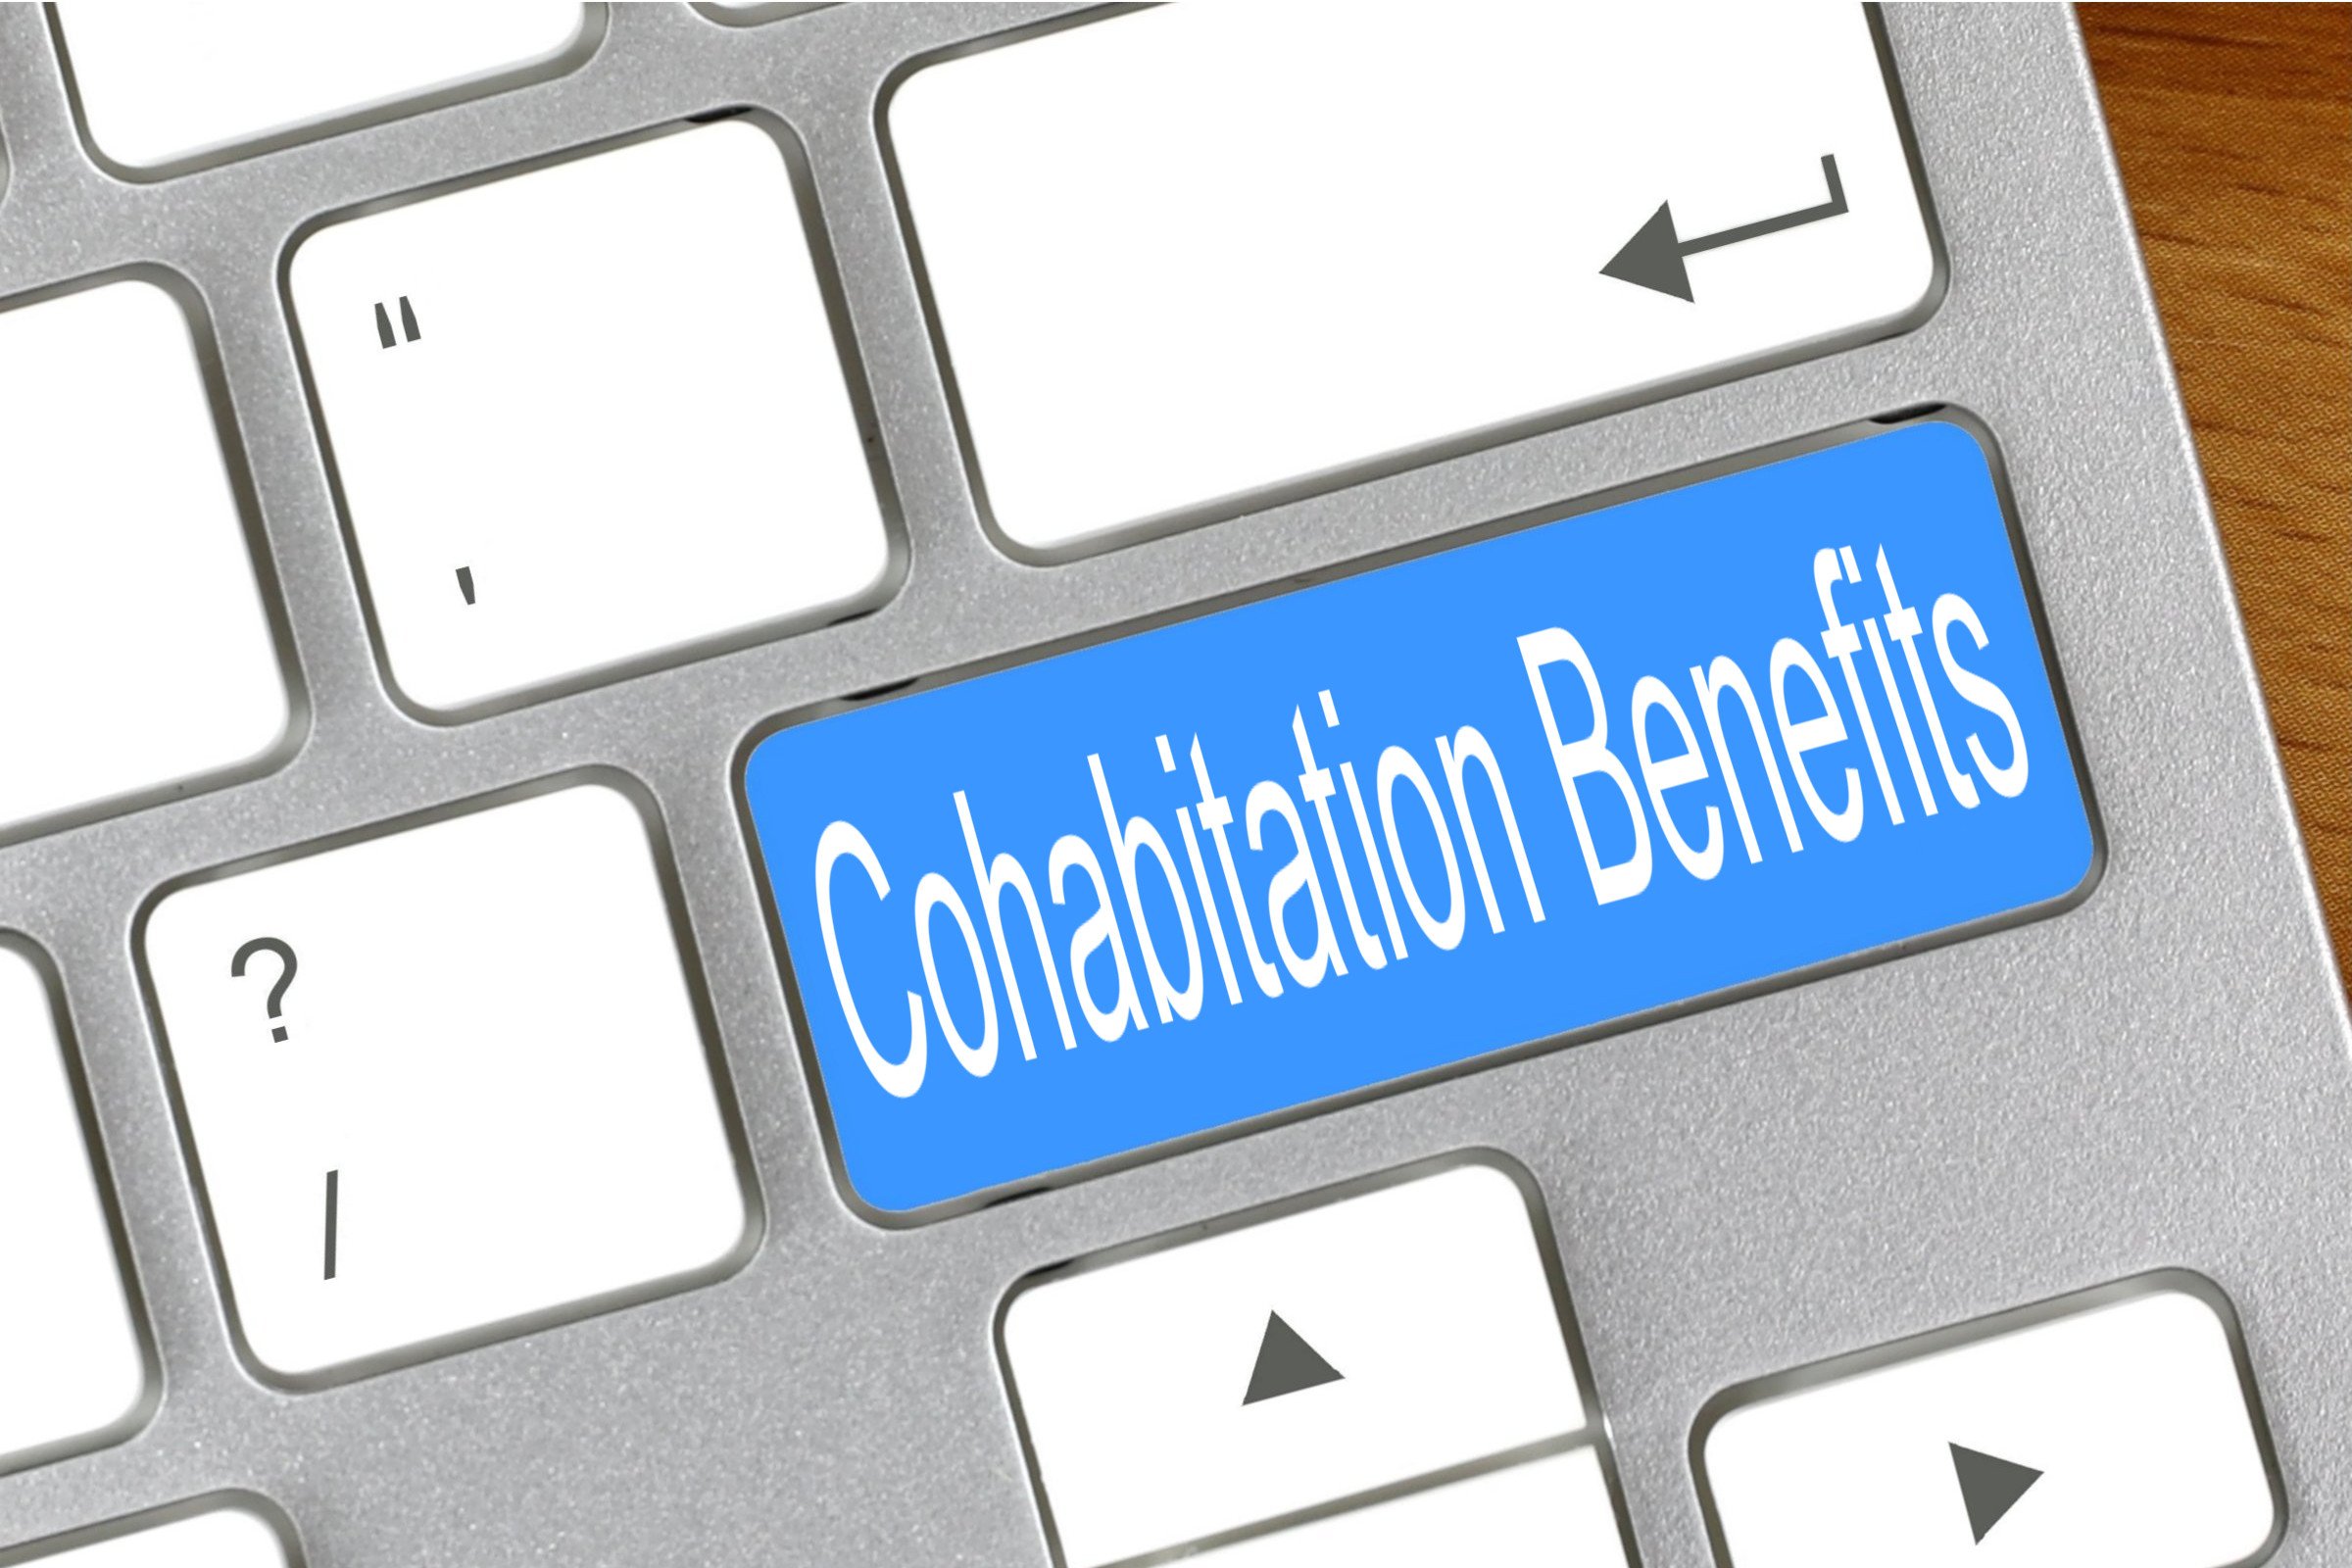 cohabitation benefits